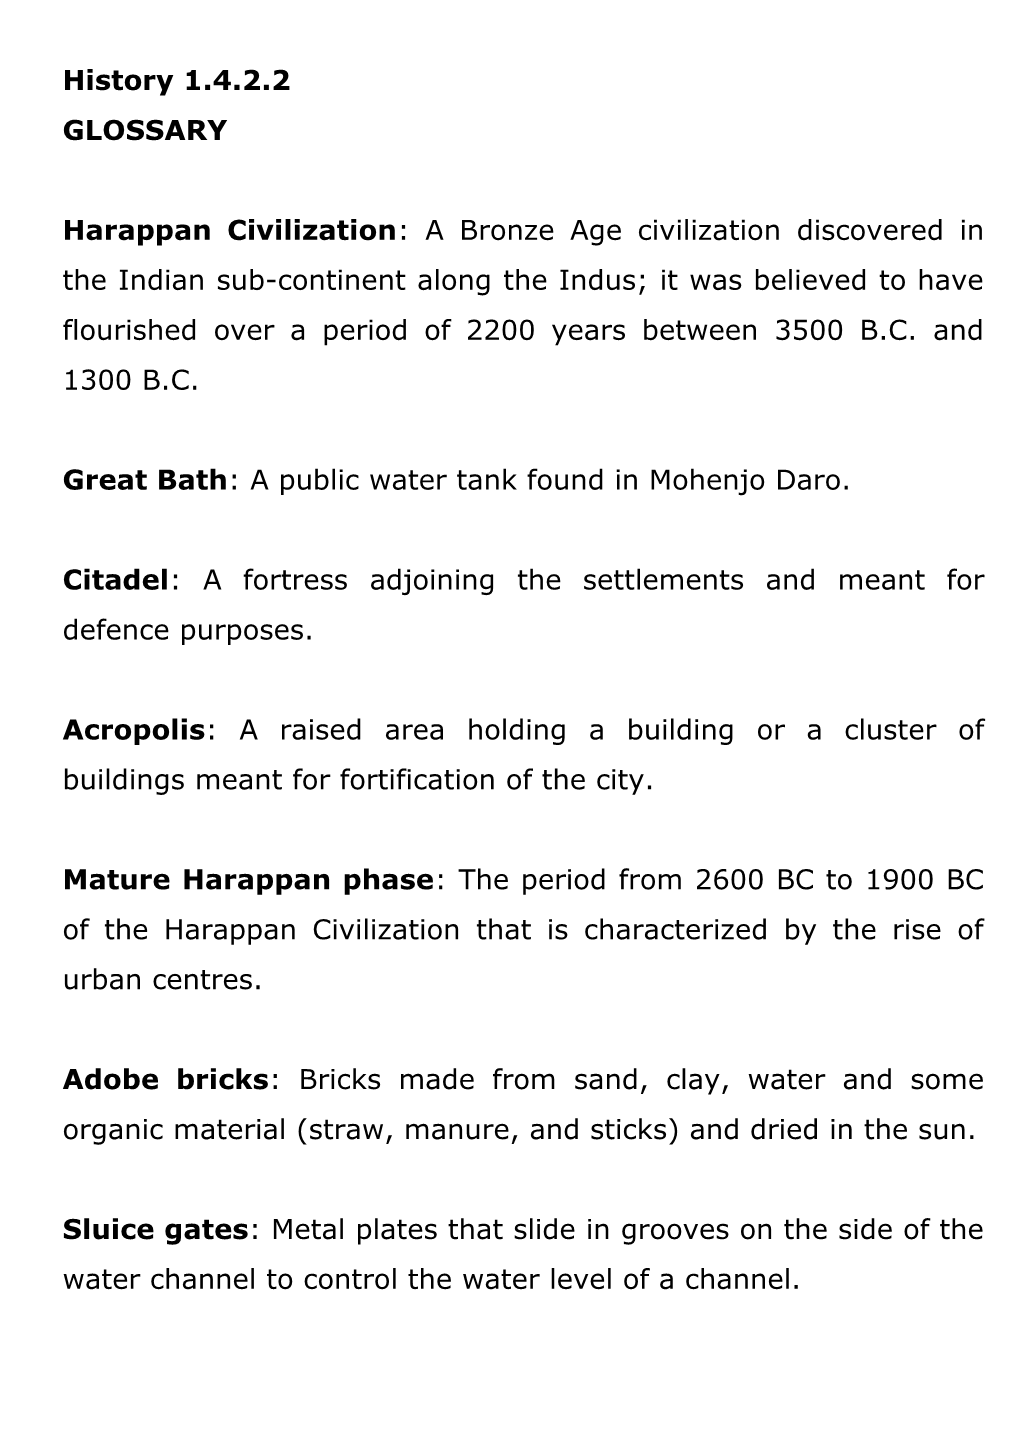 Great Bath: a Public Water Tank Found in Mohenjo Daro